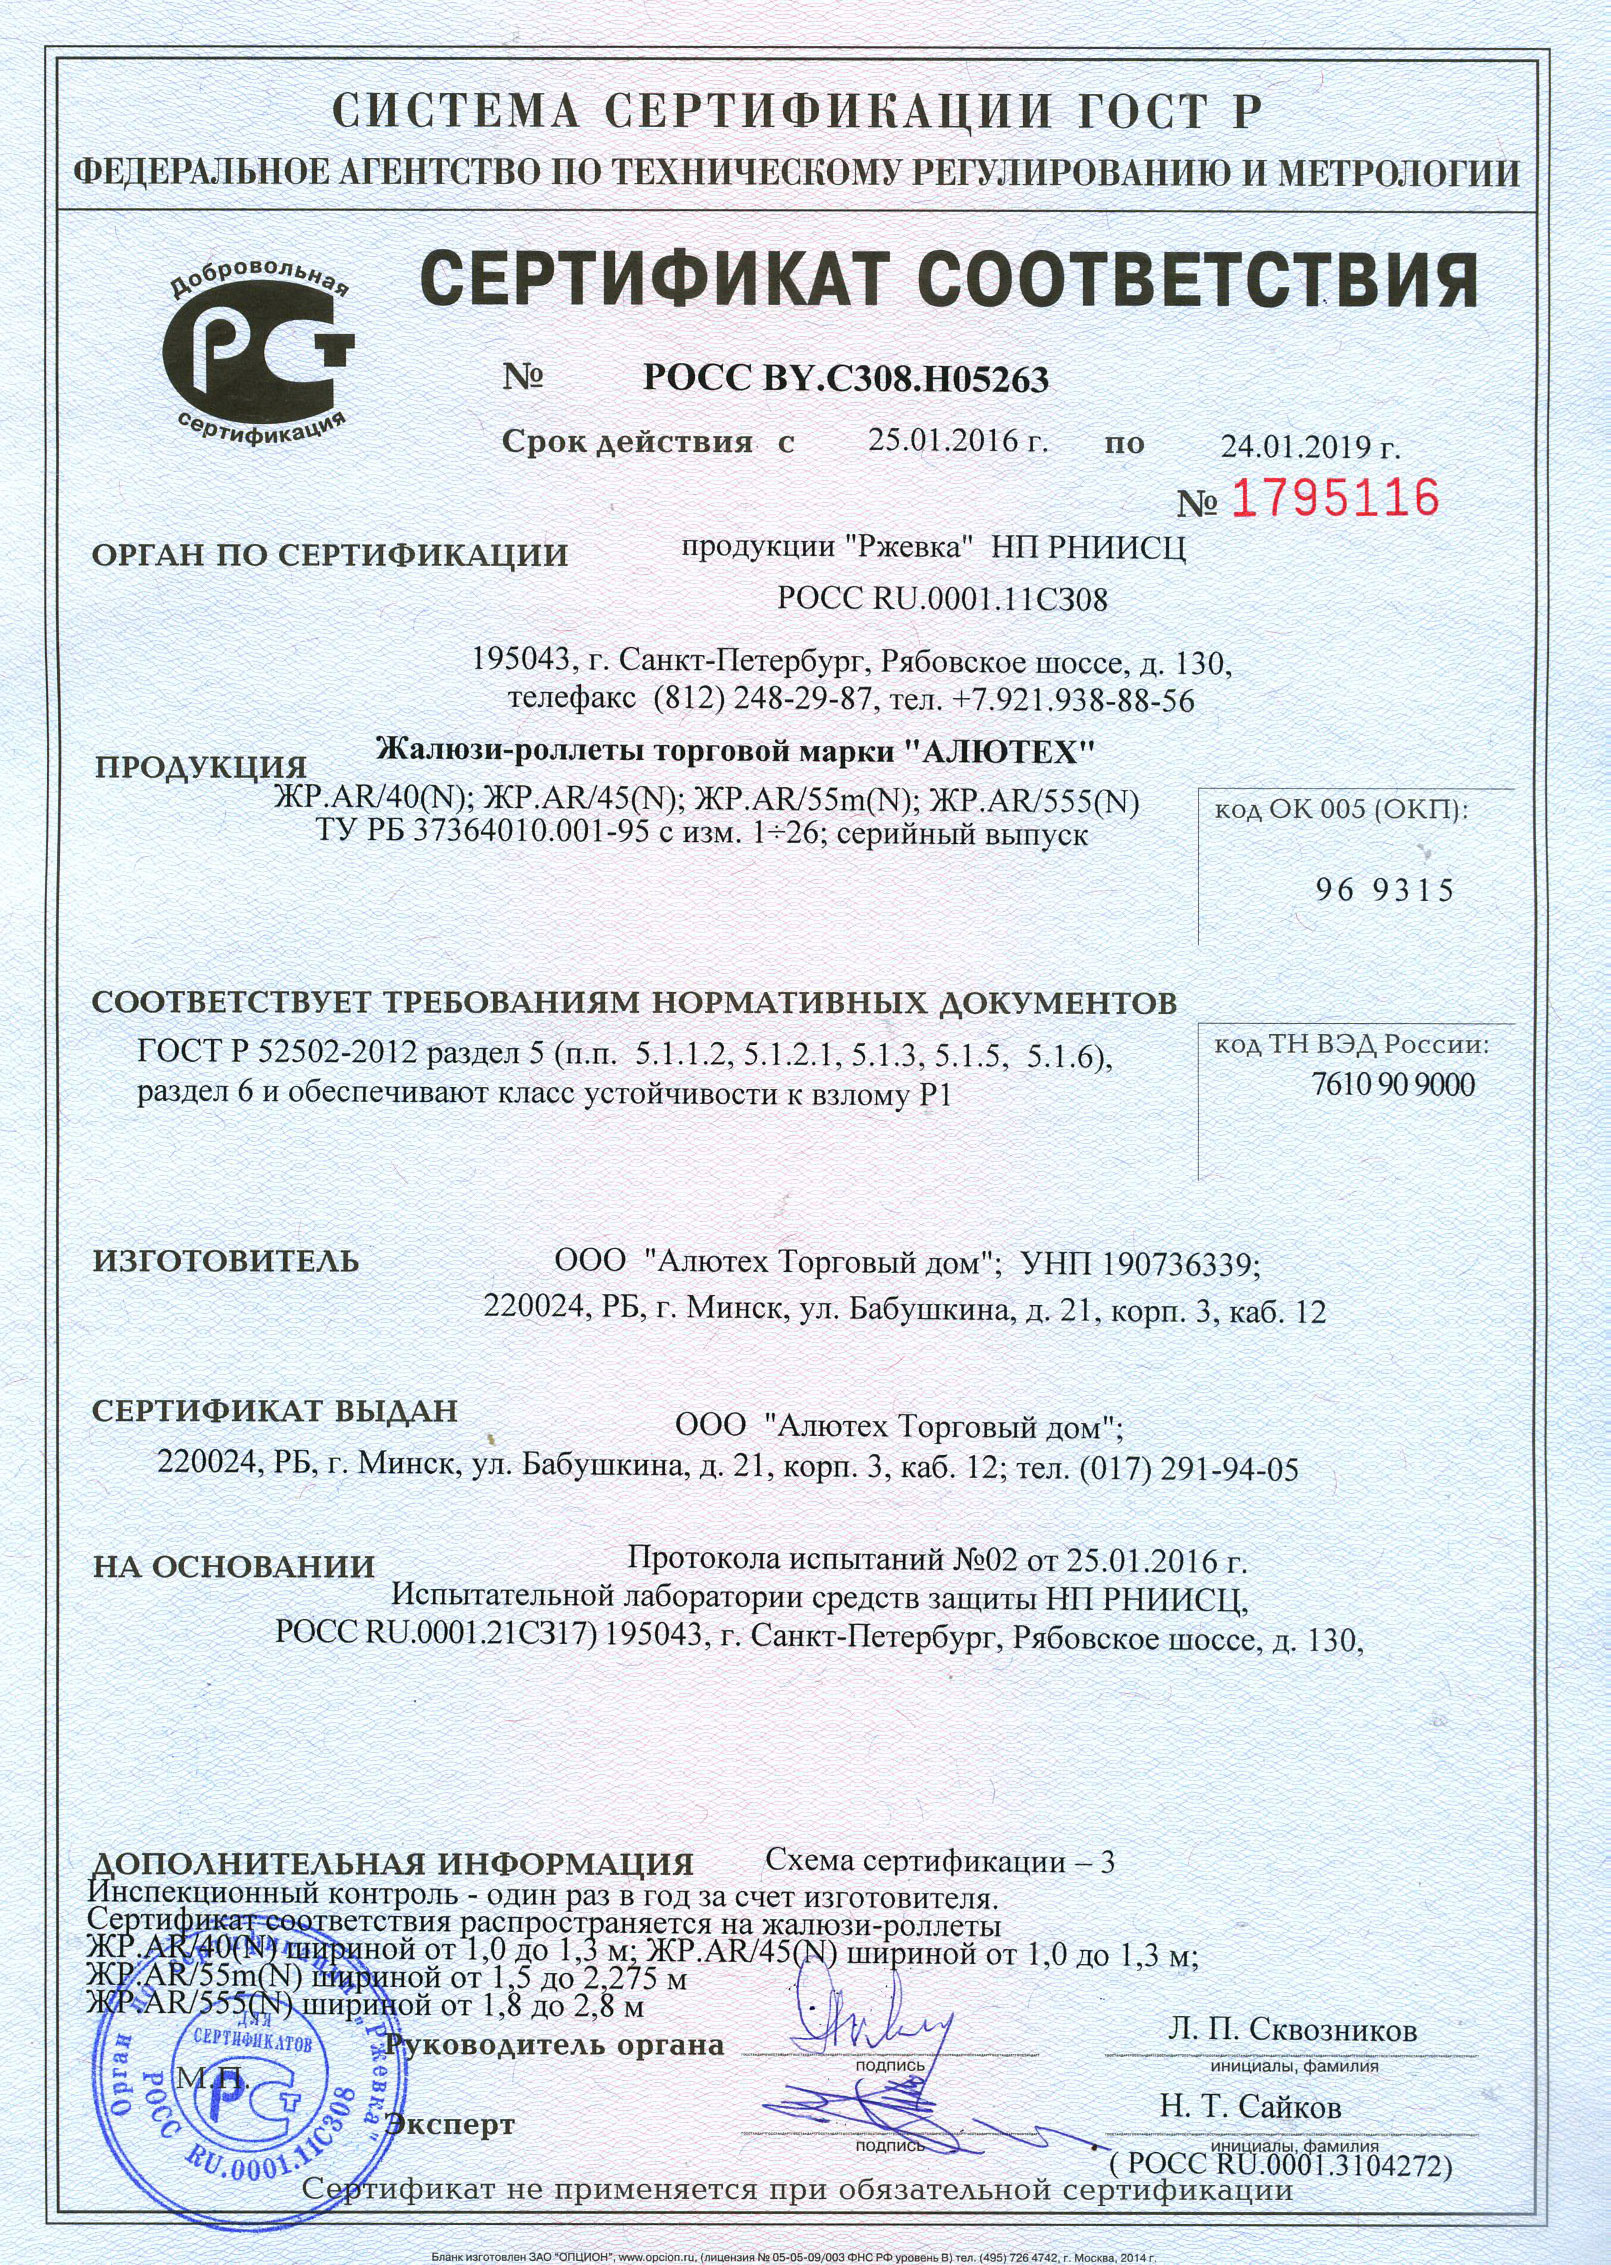 Сертификат соответствия АЛЮТЕХ ЖР.AR/40 ЖР.AR45(N) ЖР.AR/55m(N)